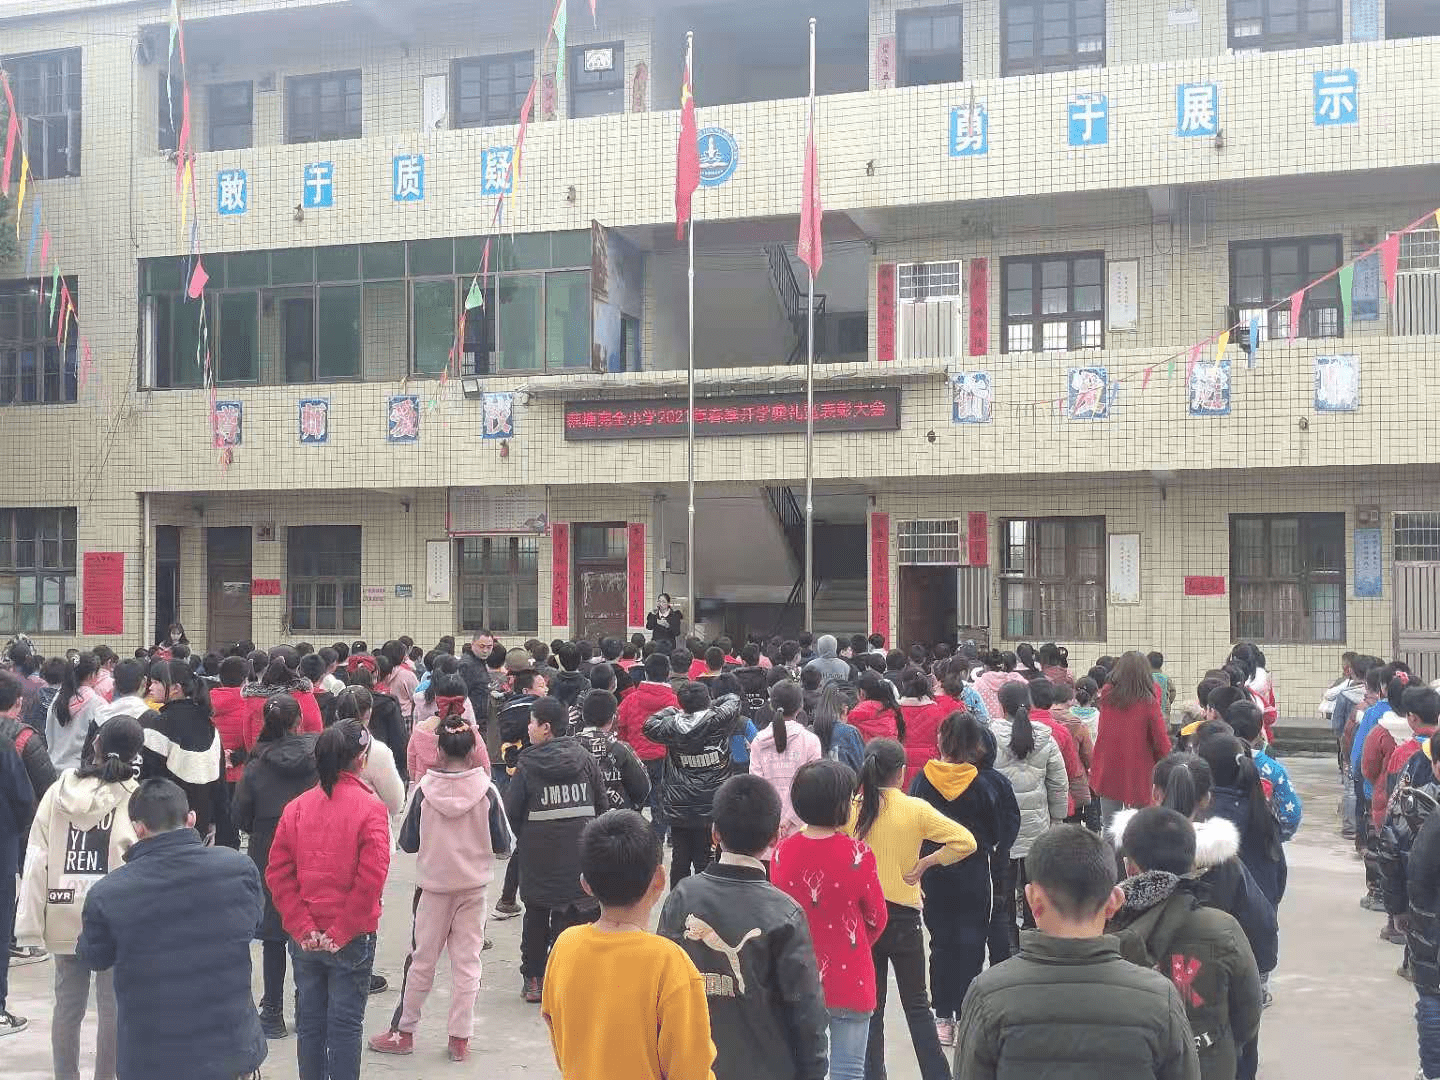 隆回县岩口镇藕塘完全小学举行2021年春季开学典礼